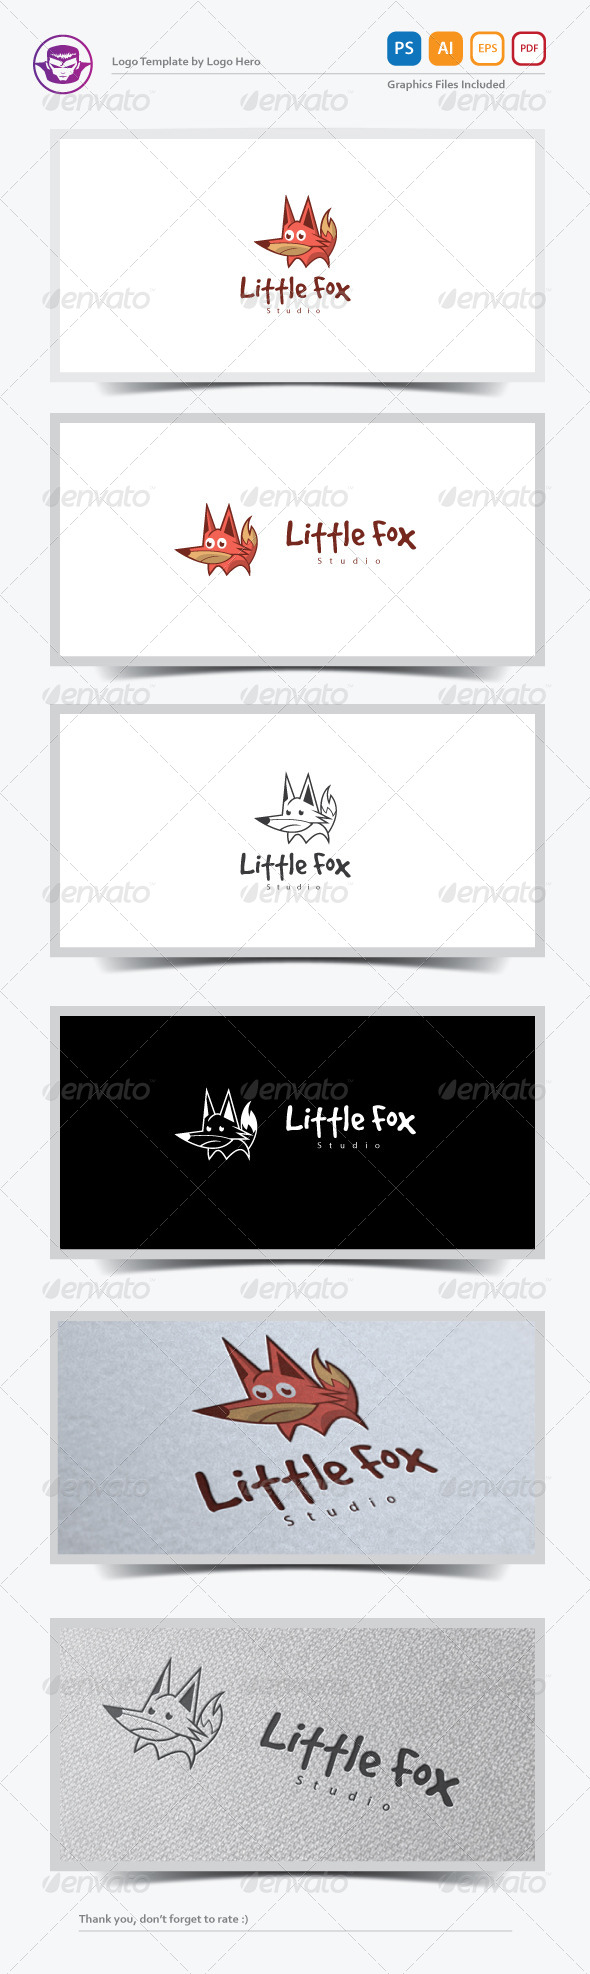 GraphicRiver Little Fox Logo Template 7640060